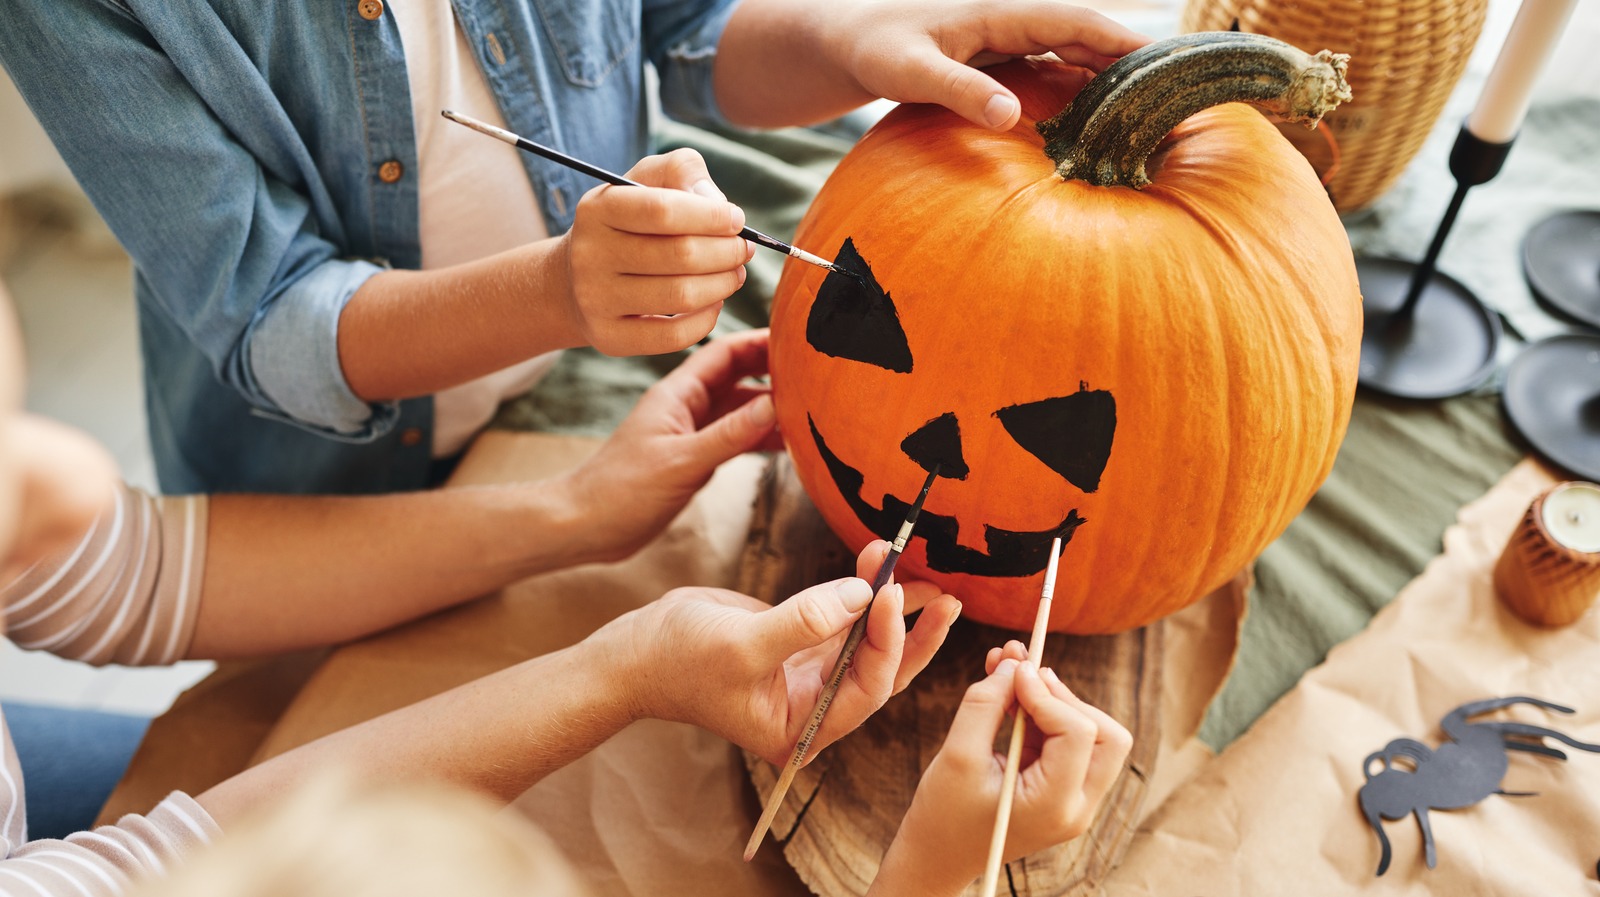 DIY Pumpkin Crafts That Involve No Carving